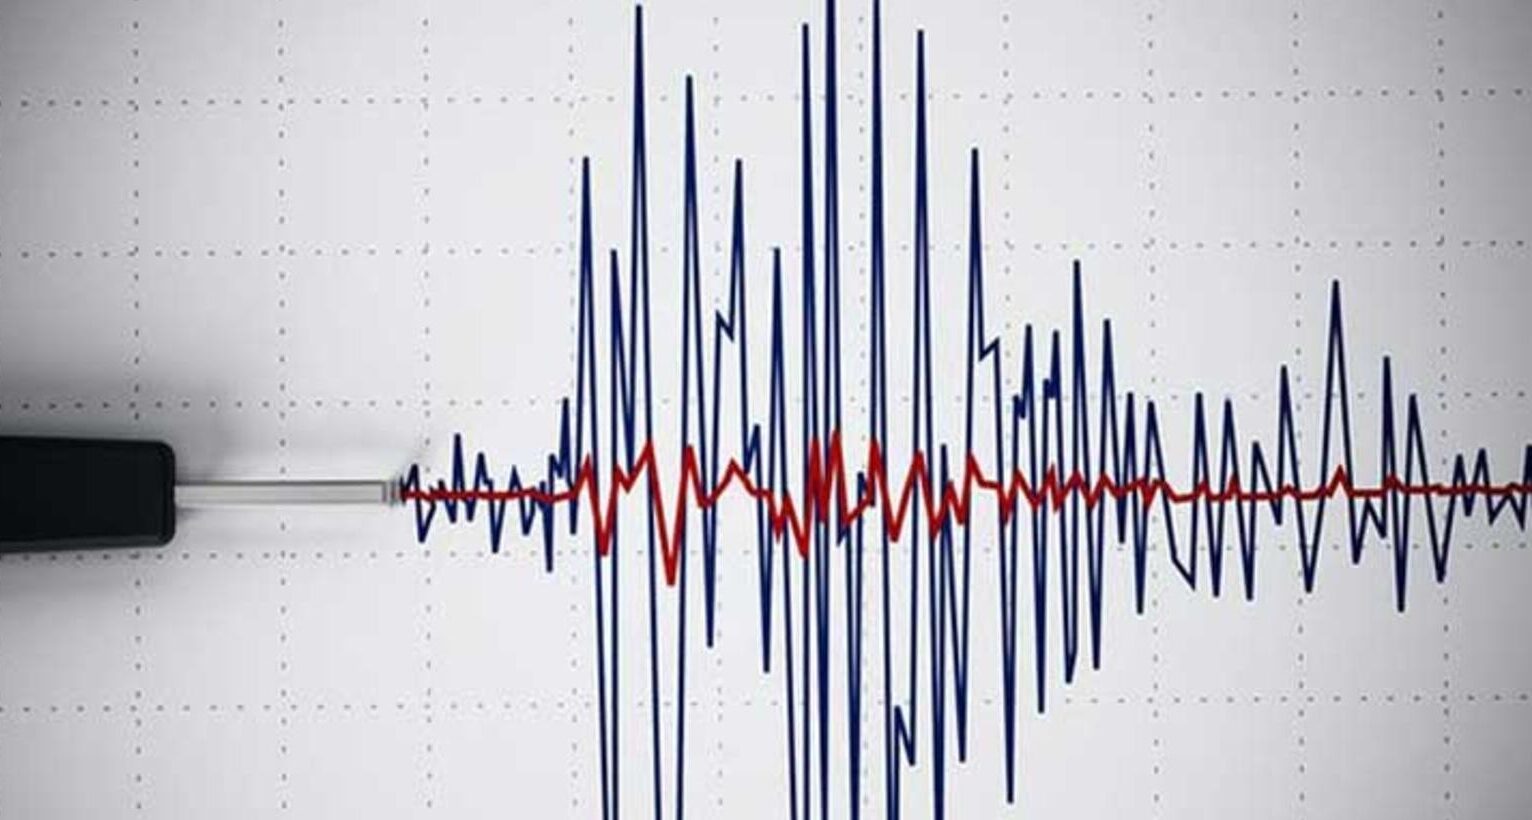 خبير يثير مخاوف بشأن الزلازل التي قد تحدث في مصر